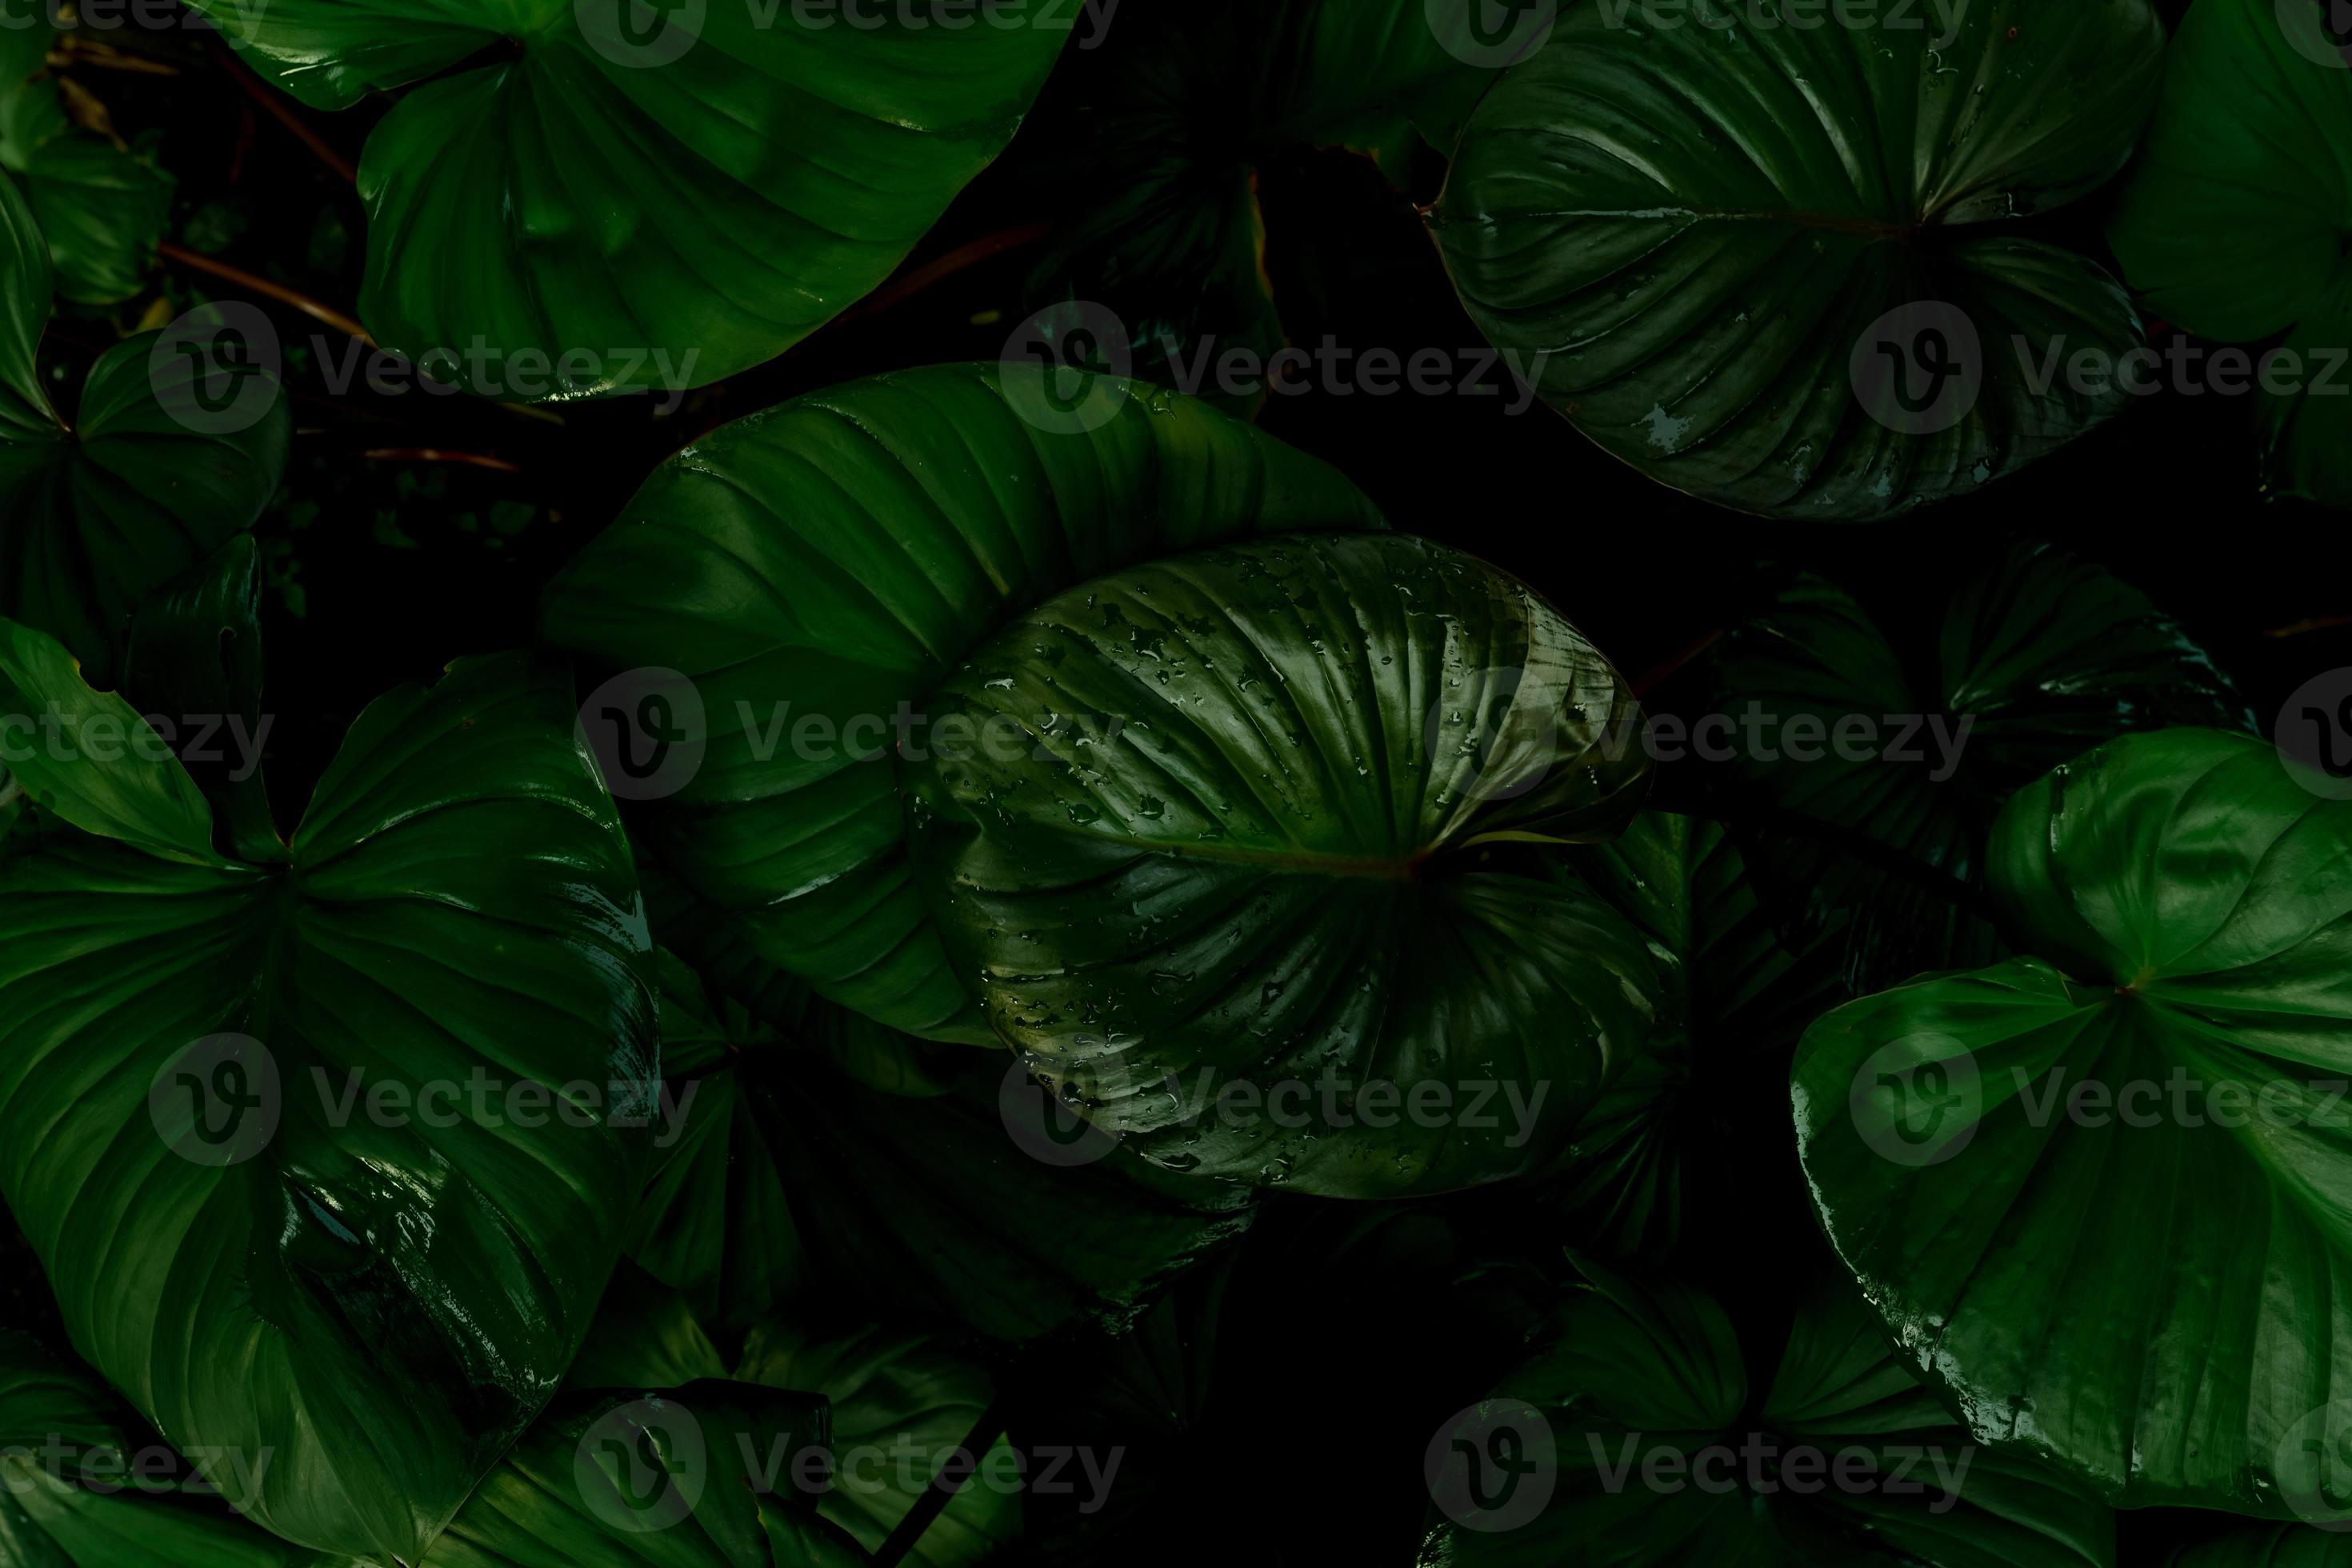 textura de folha verde sobre fundo escuro. detalhe de close-up de planta de  casa interna.